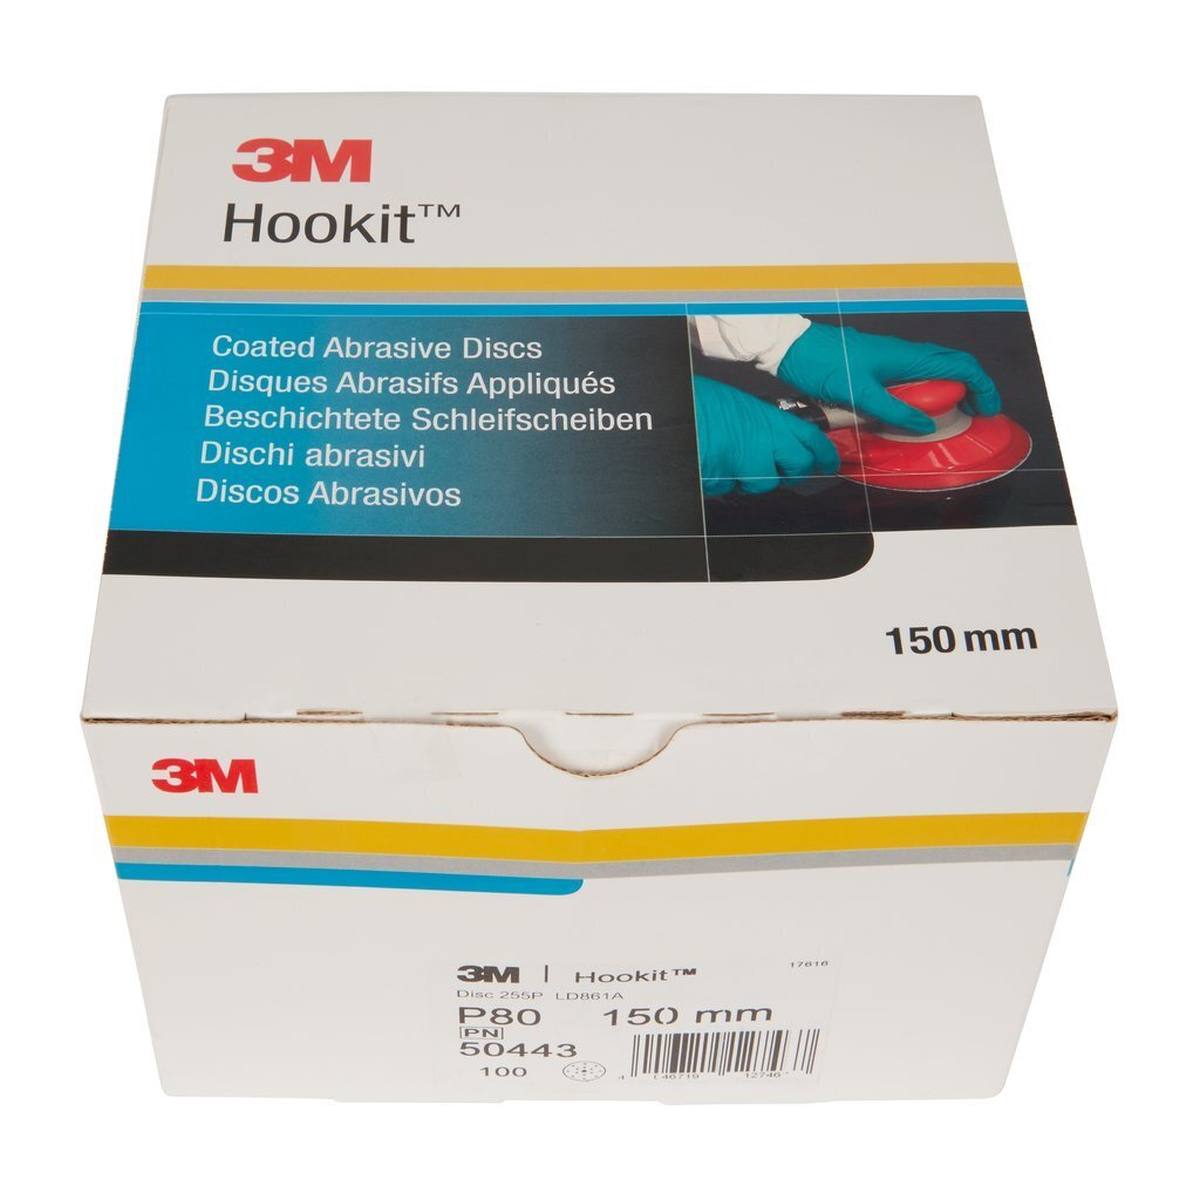 3M Hookit Gold Premium 255P+, 150 mm, P80, 15-fach geloch #50443